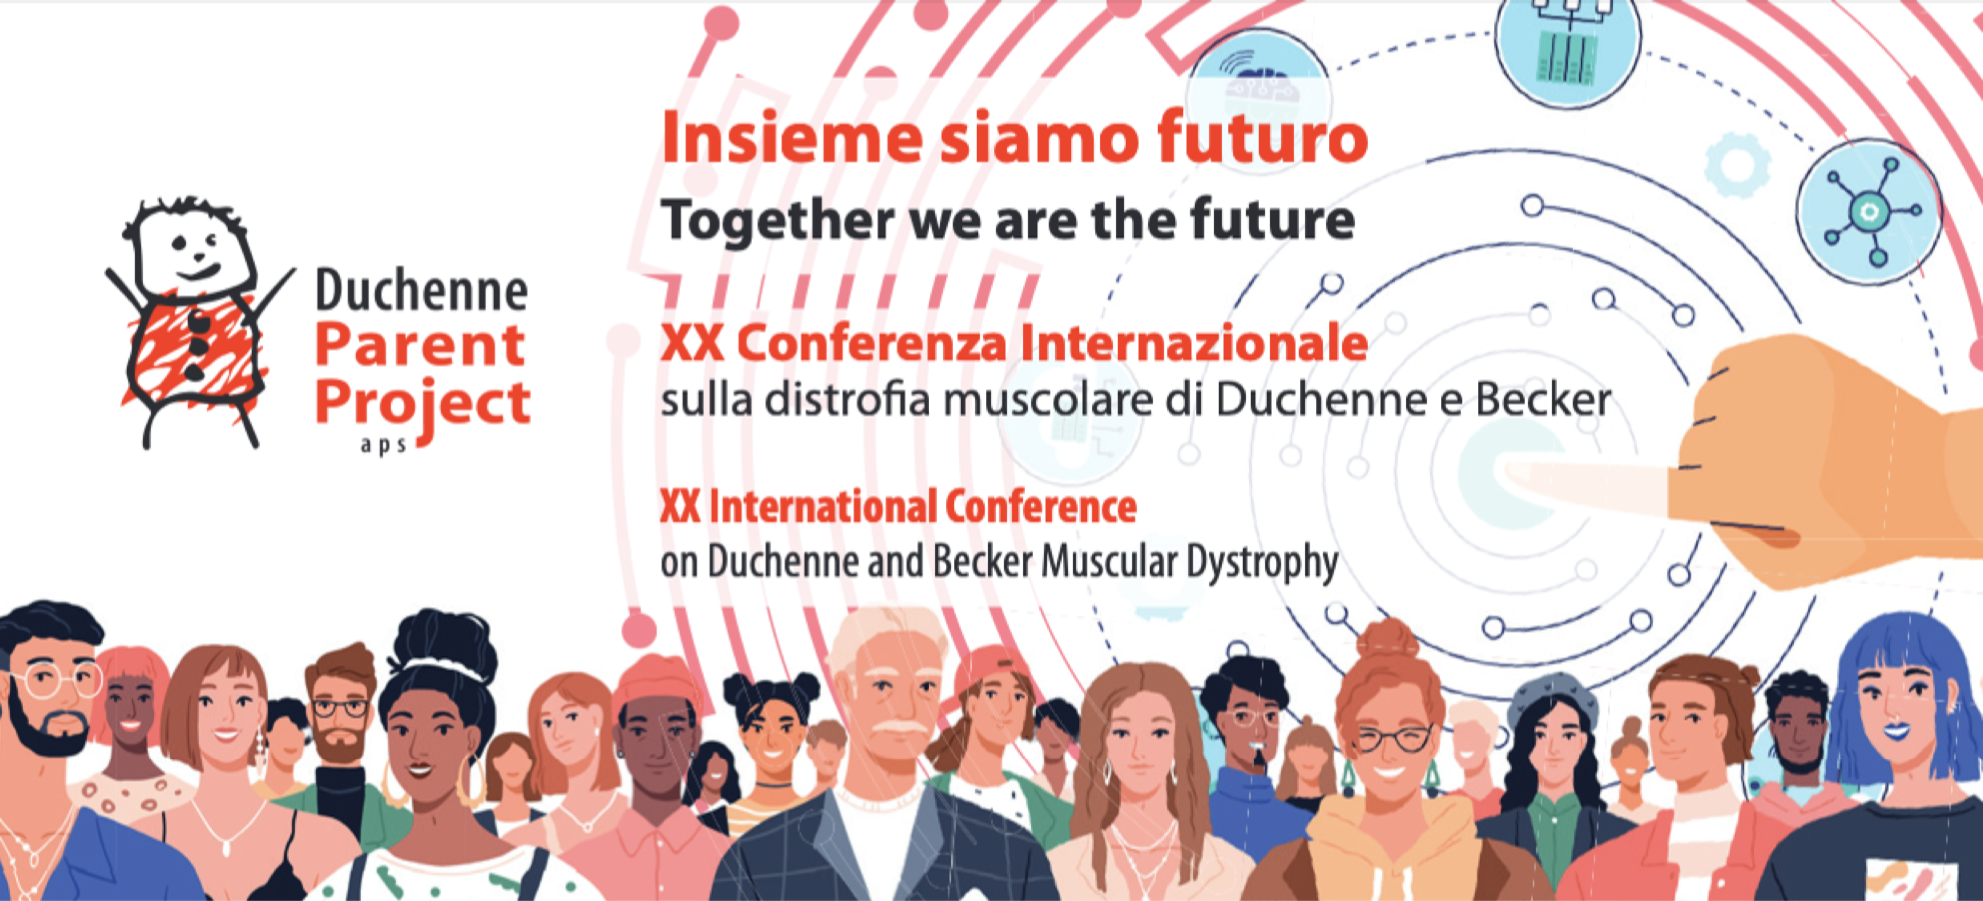 XX Conferenza Internazionale sulla Distrofia Muscolare di Duchenne e Becker